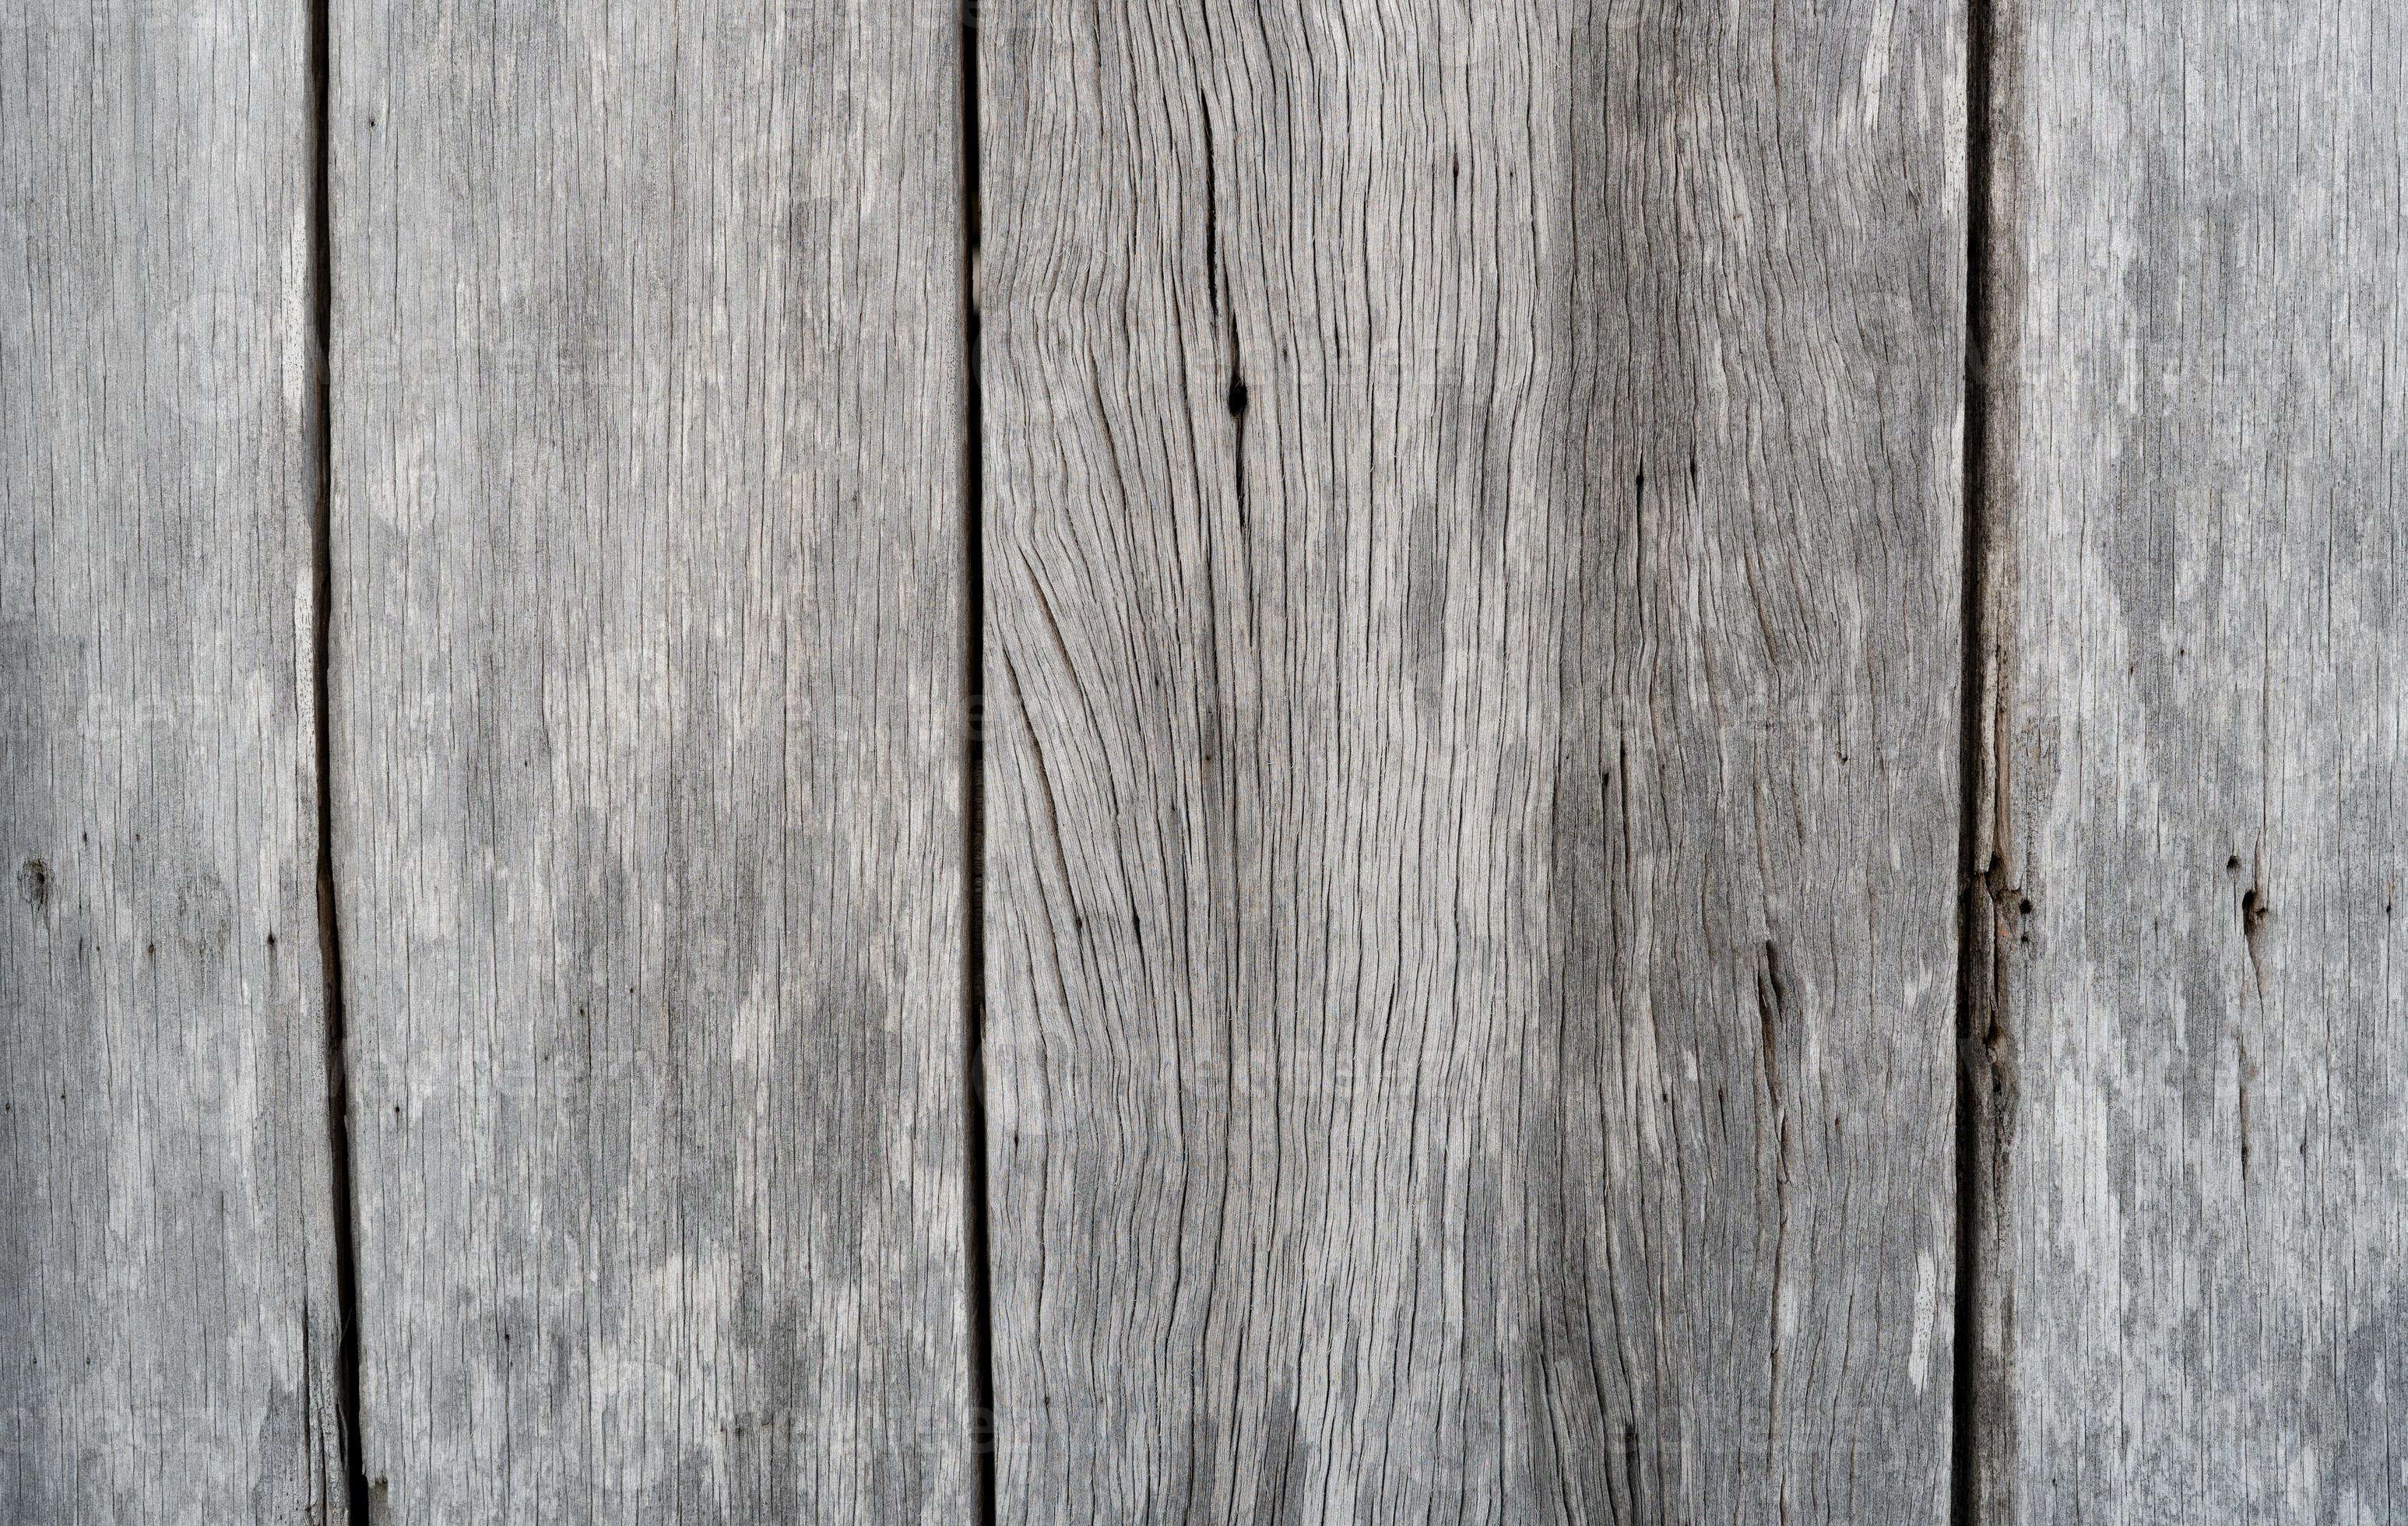 Nền gỗ xám cũ: Nếu bạn đang tìm kiếm một mảnh ghép tuyệt vời cho không gian trang trí của mình, hãy thử sử dụng nền gỗ xám cũ. Gỗ được tạo thành từ thời gian và có sự độc đáo và tuyệt vời của nó trong việc trang trí không gian của bạn.